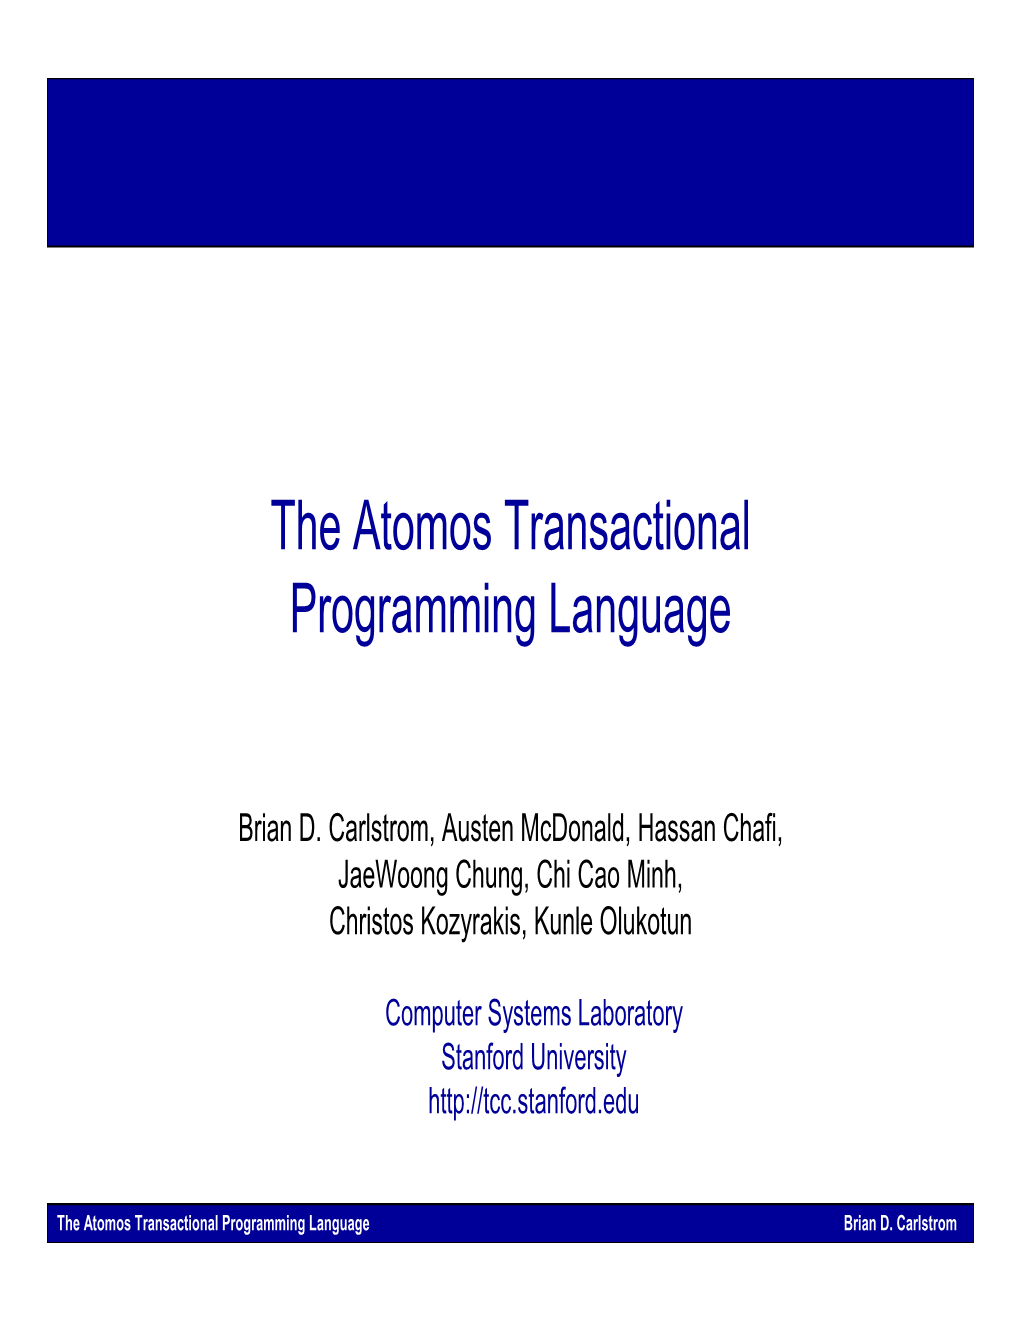 The Atomos Transactional Programming Language